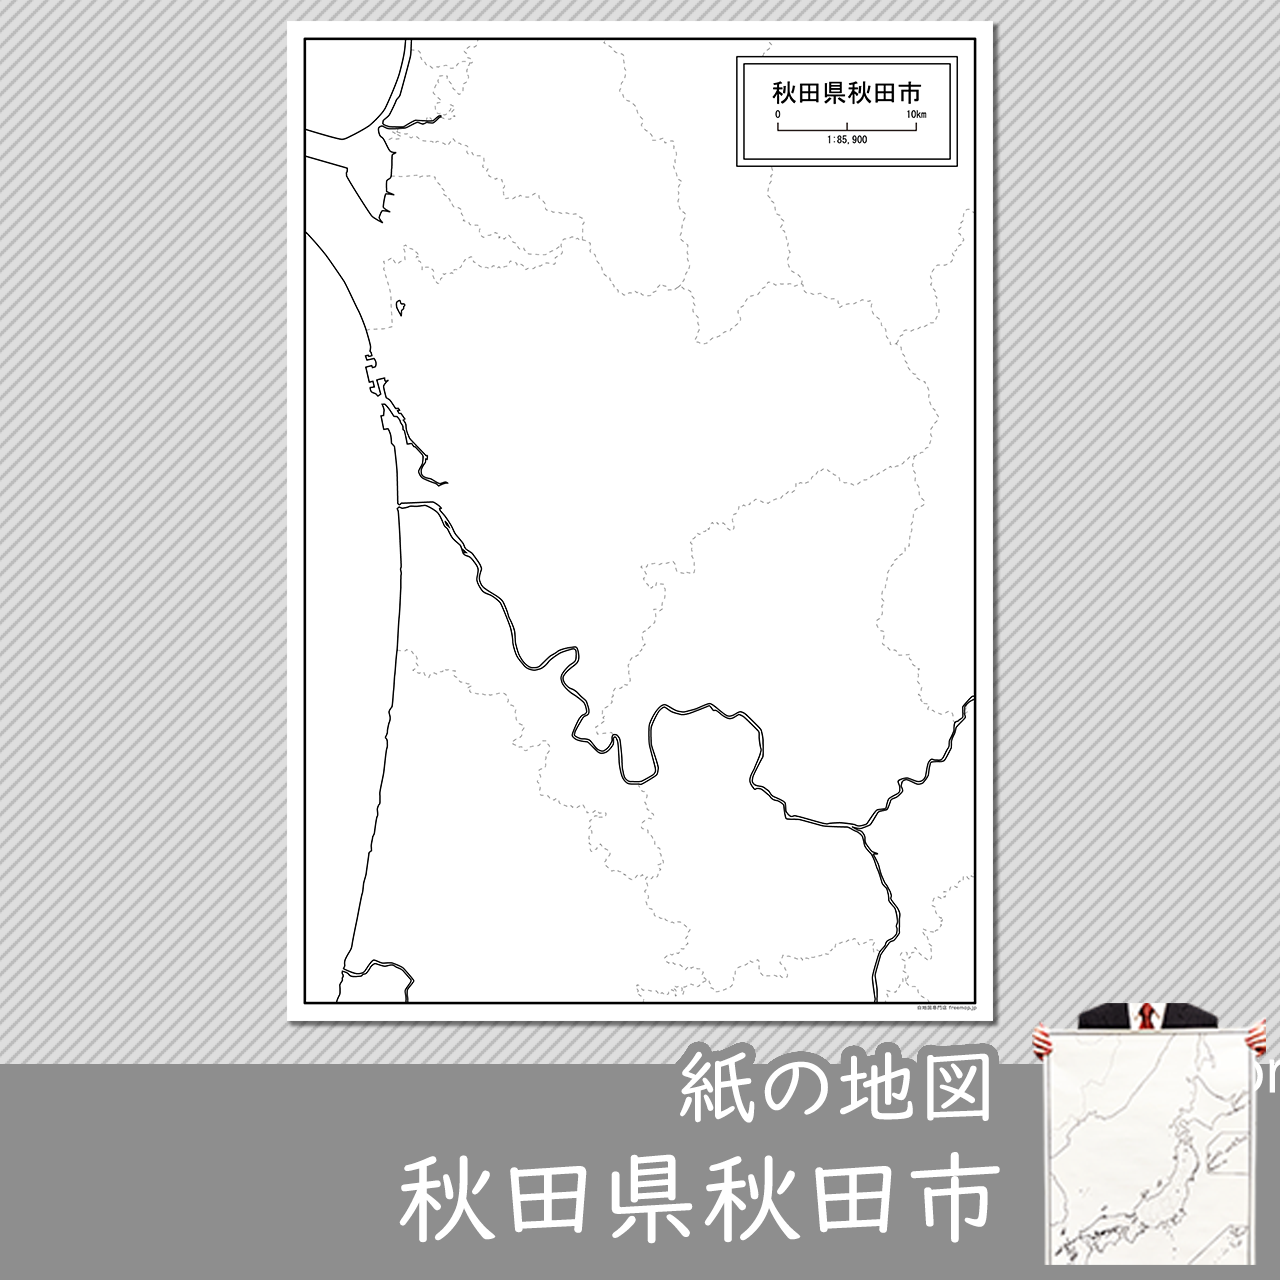 秋田市の紙の白地図のサムネイル